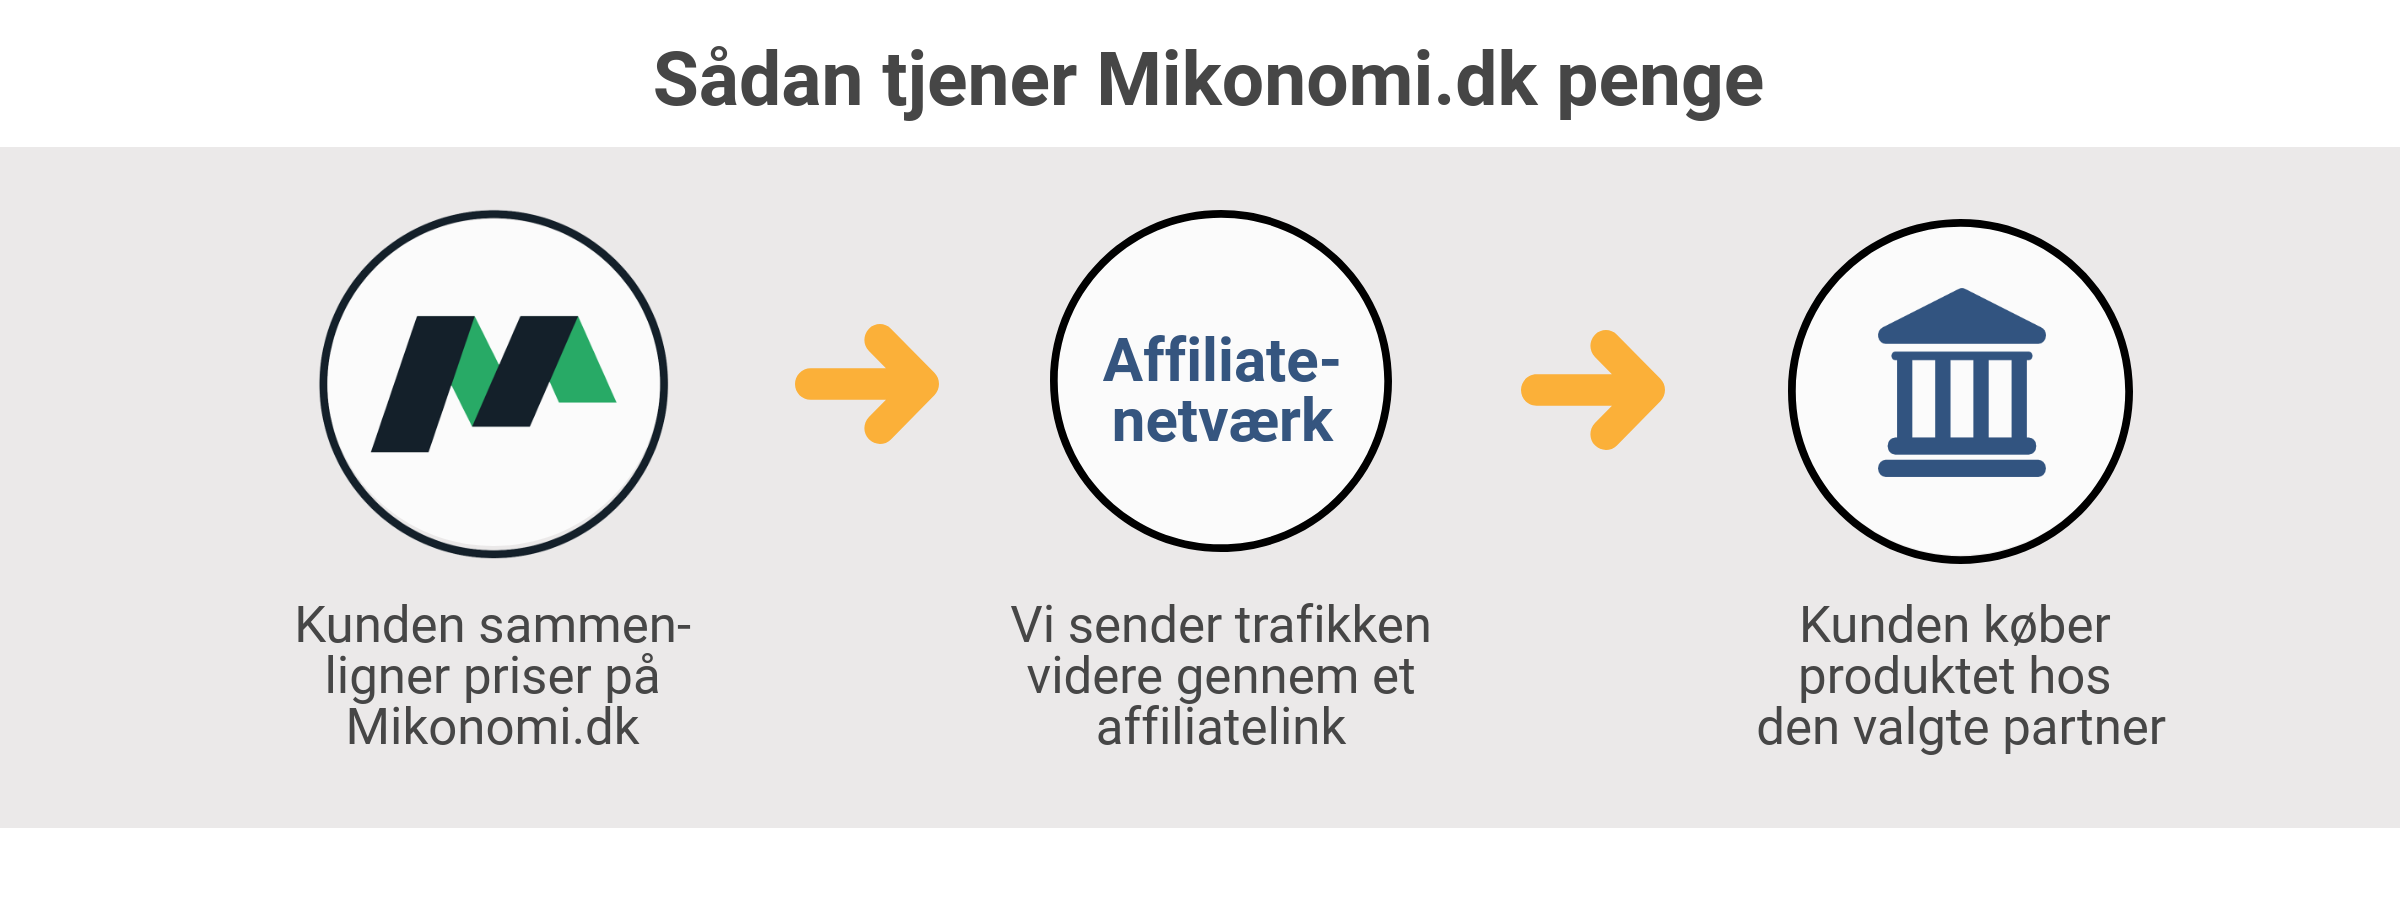 Sådan tjener Mikonomi.dk penge